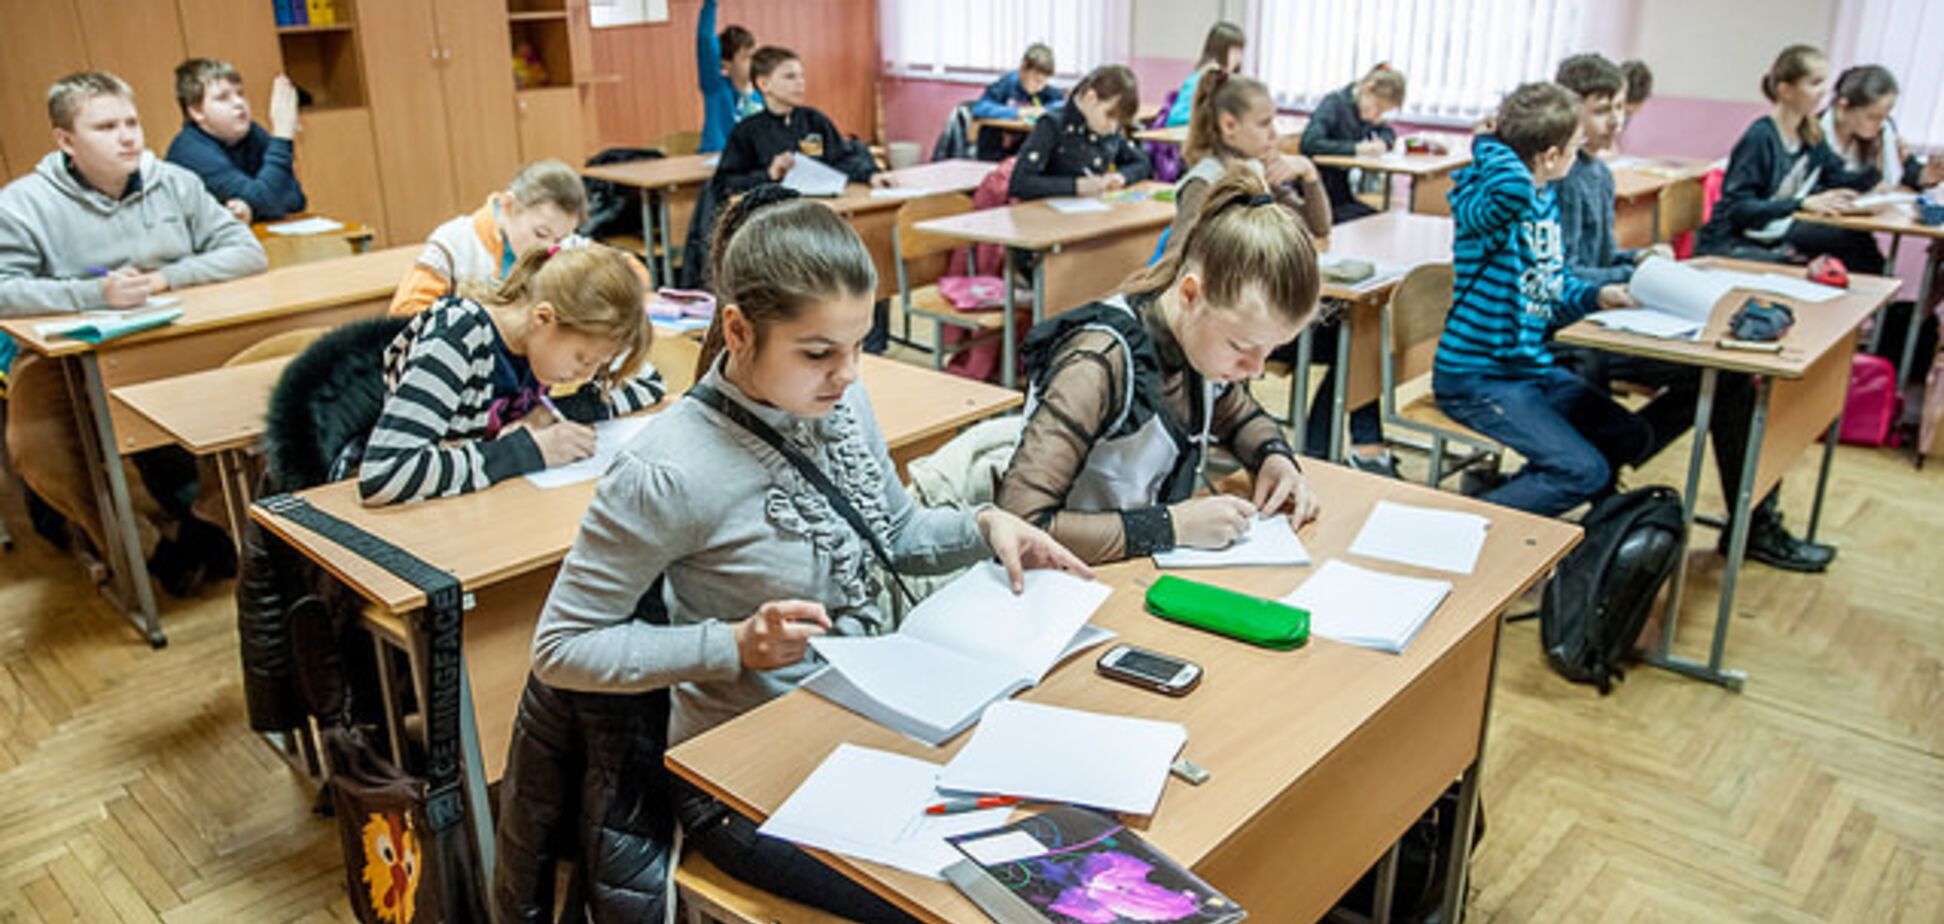 Відрізала чубчики і заклеїла роти: в школі Києва розгорівся скандал через учительку